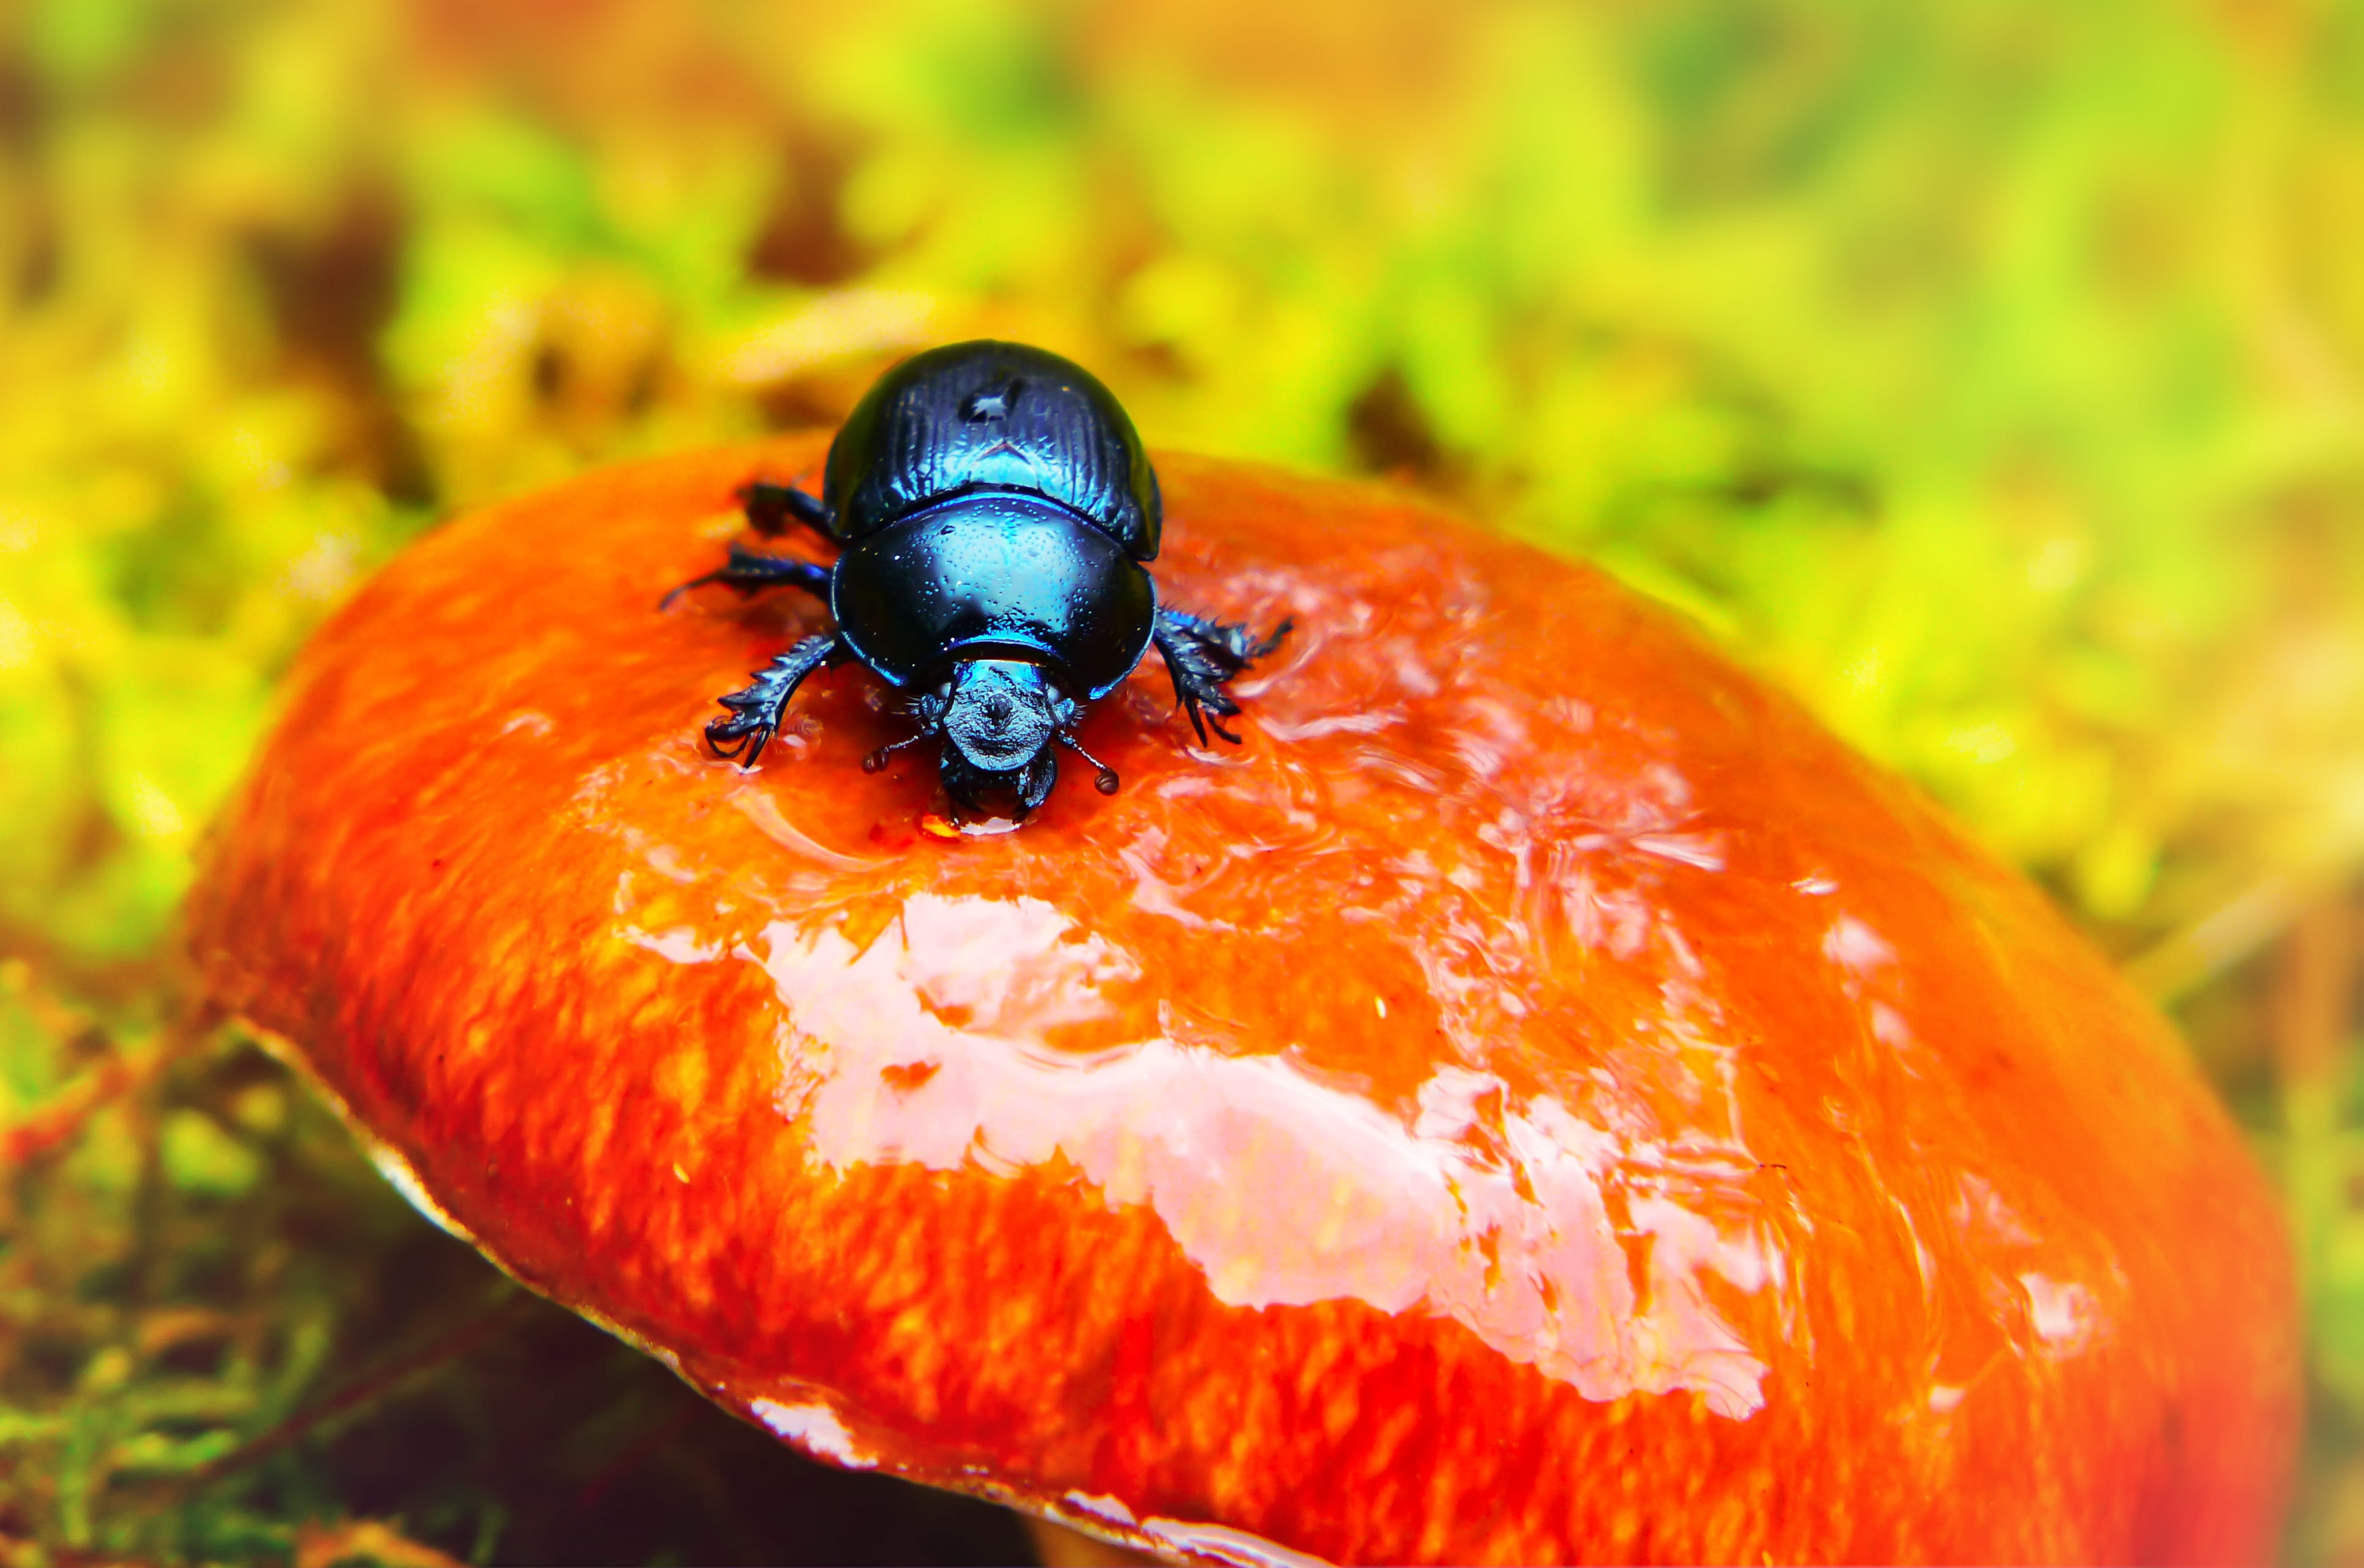 black beetle on round orange mushroom, animal, dung beetle, invertebrate